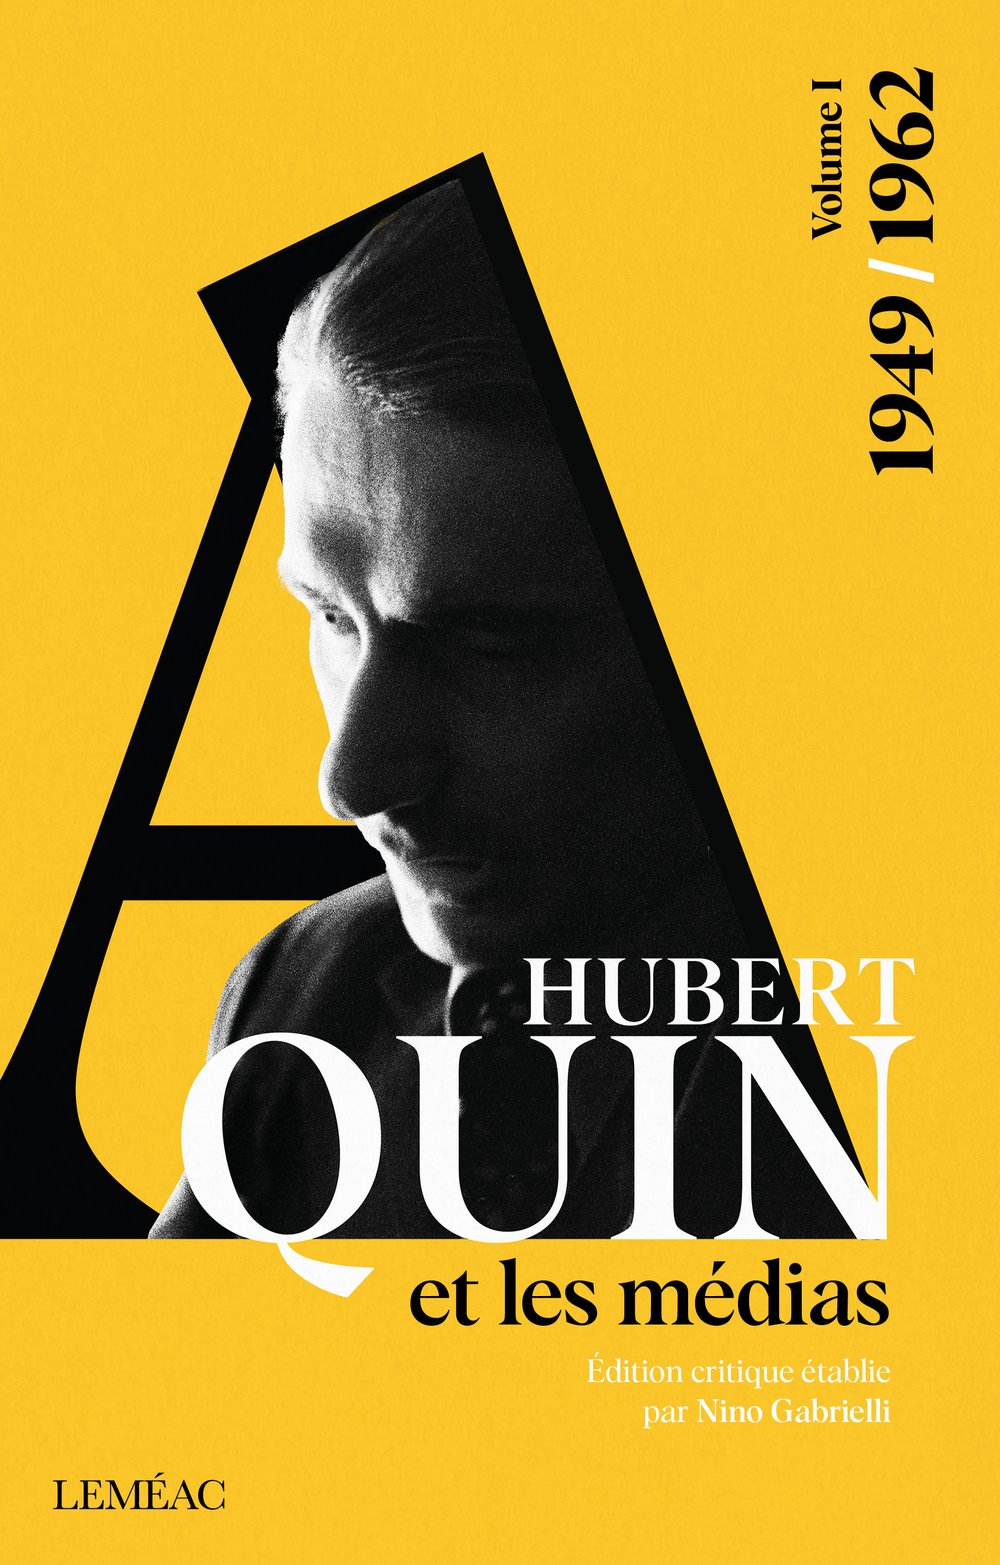 You are currently viewing Parution de l'édition critique de l'oeuvre médiatique d'Hubert Aquin